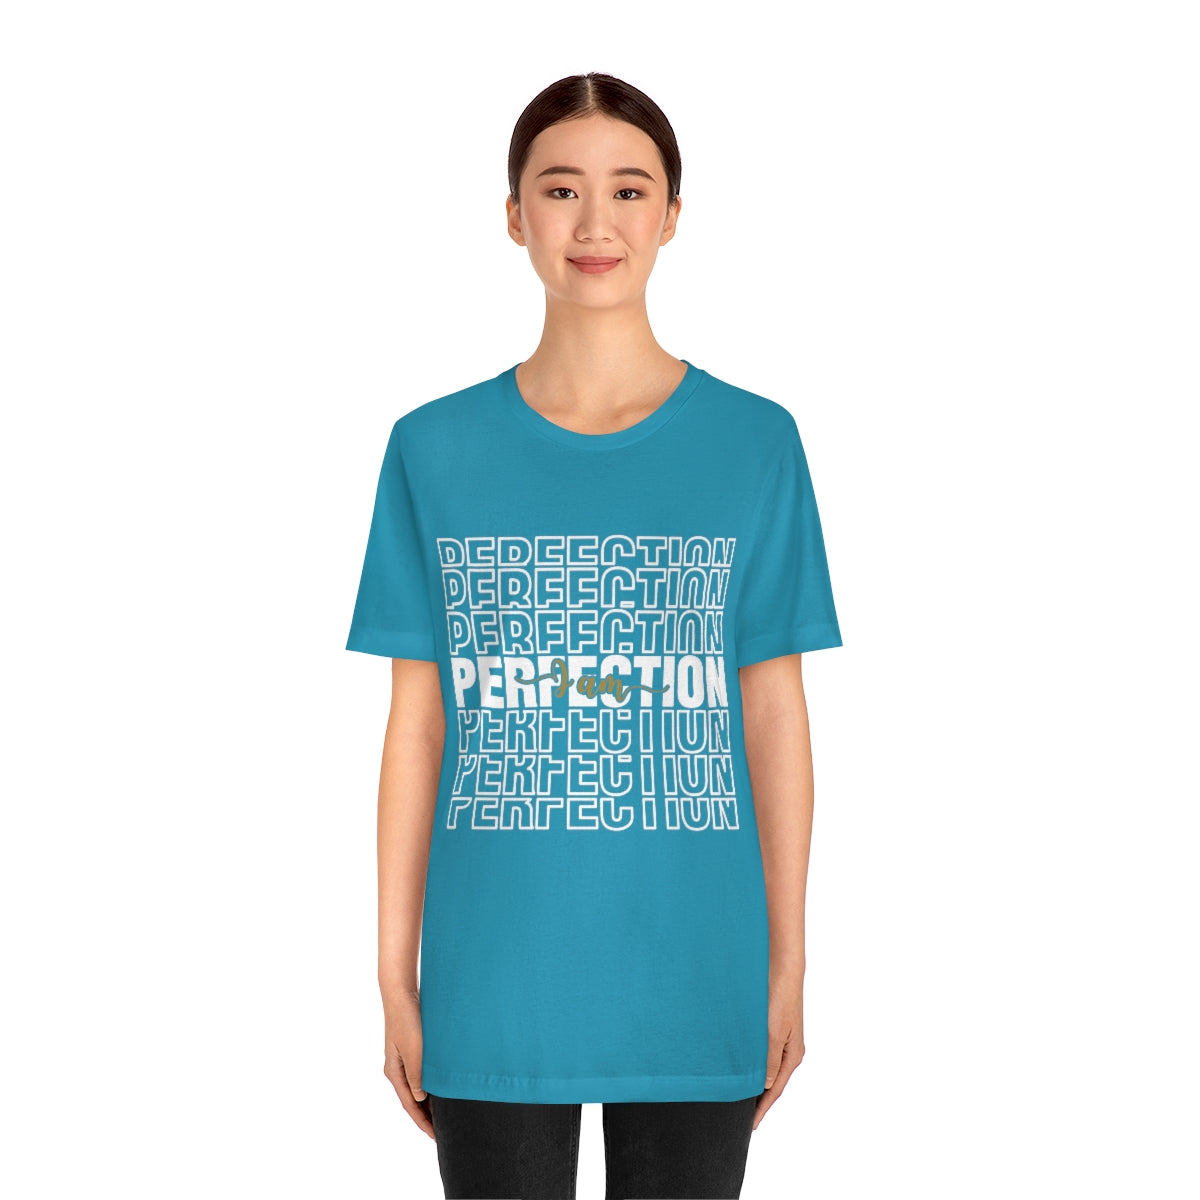 Affirmation Feminist Pro Choice T-Shirt Unisex Size  - I am Perfection Printify